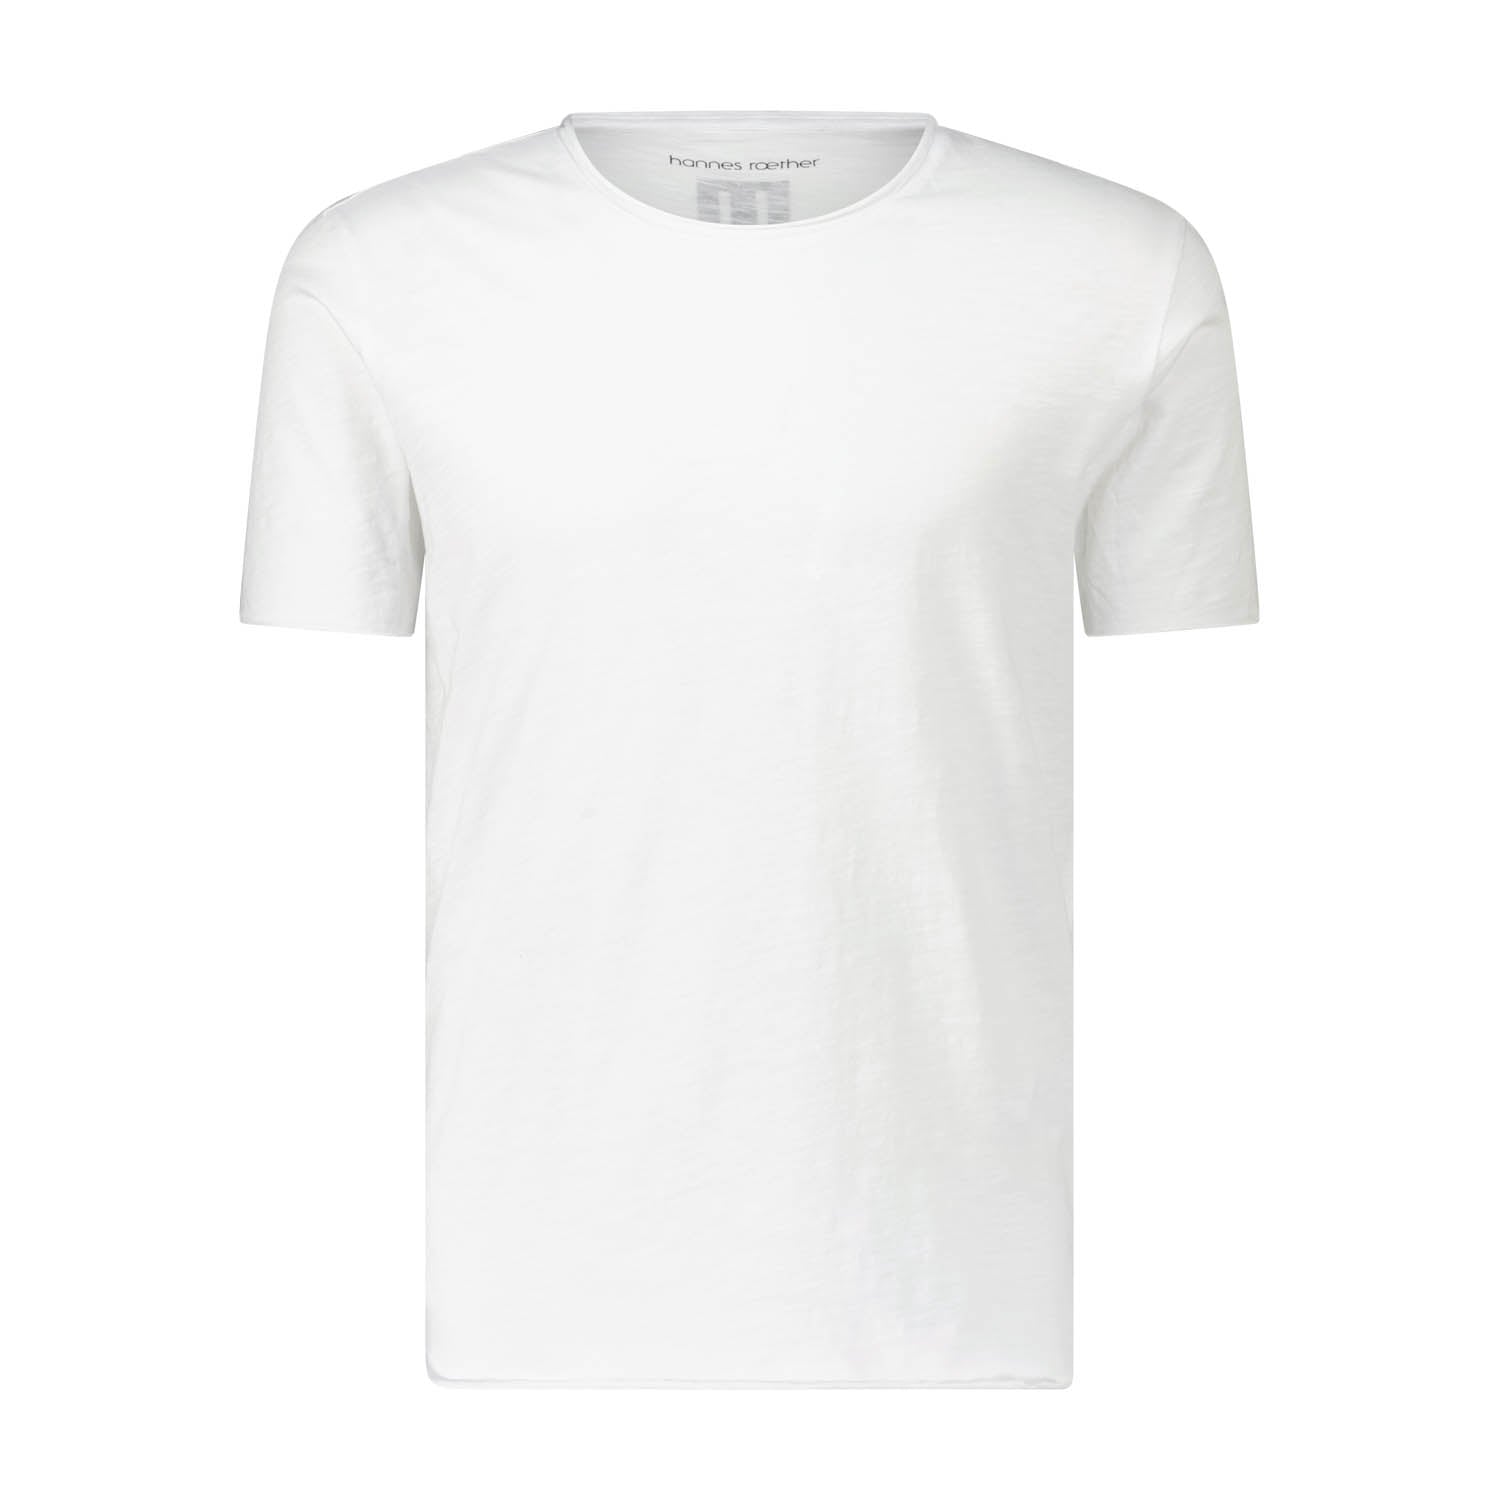 Rundhals-Shirt aus 100% Baumwolle